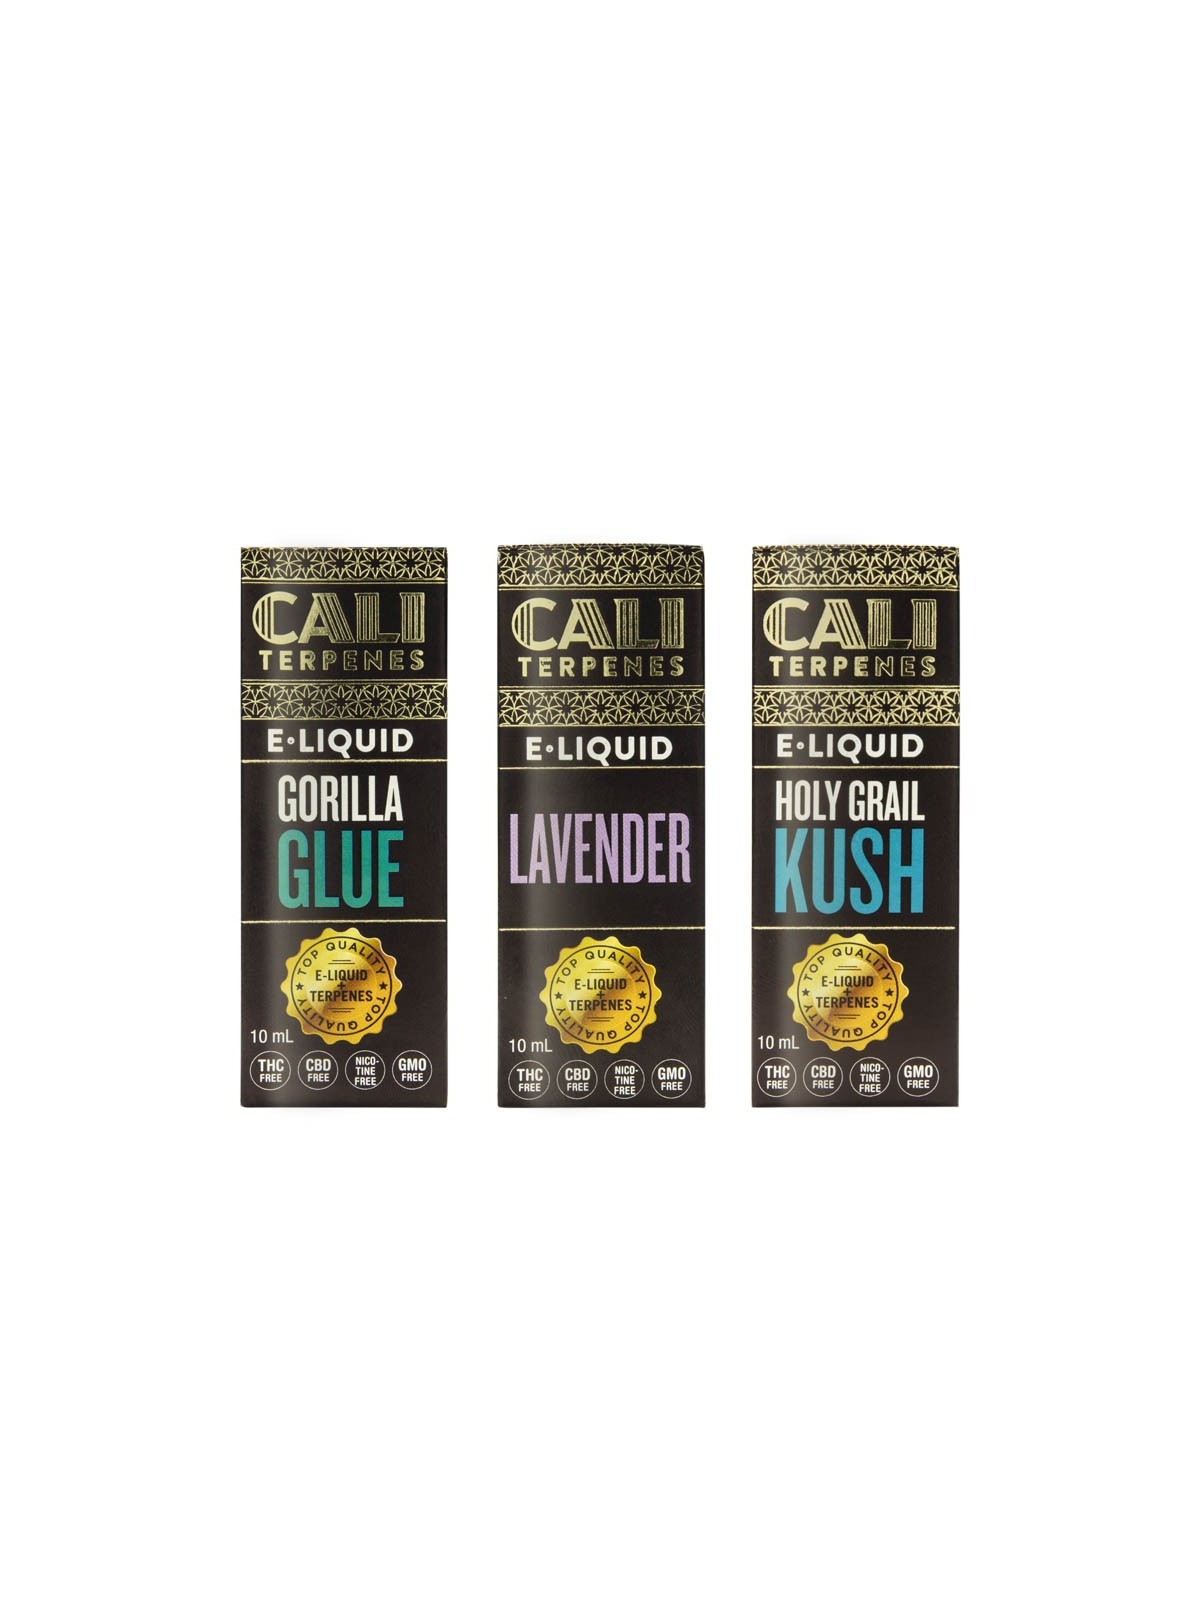 Pack de e-liquids con terpenos Relax - Cali Terpenes